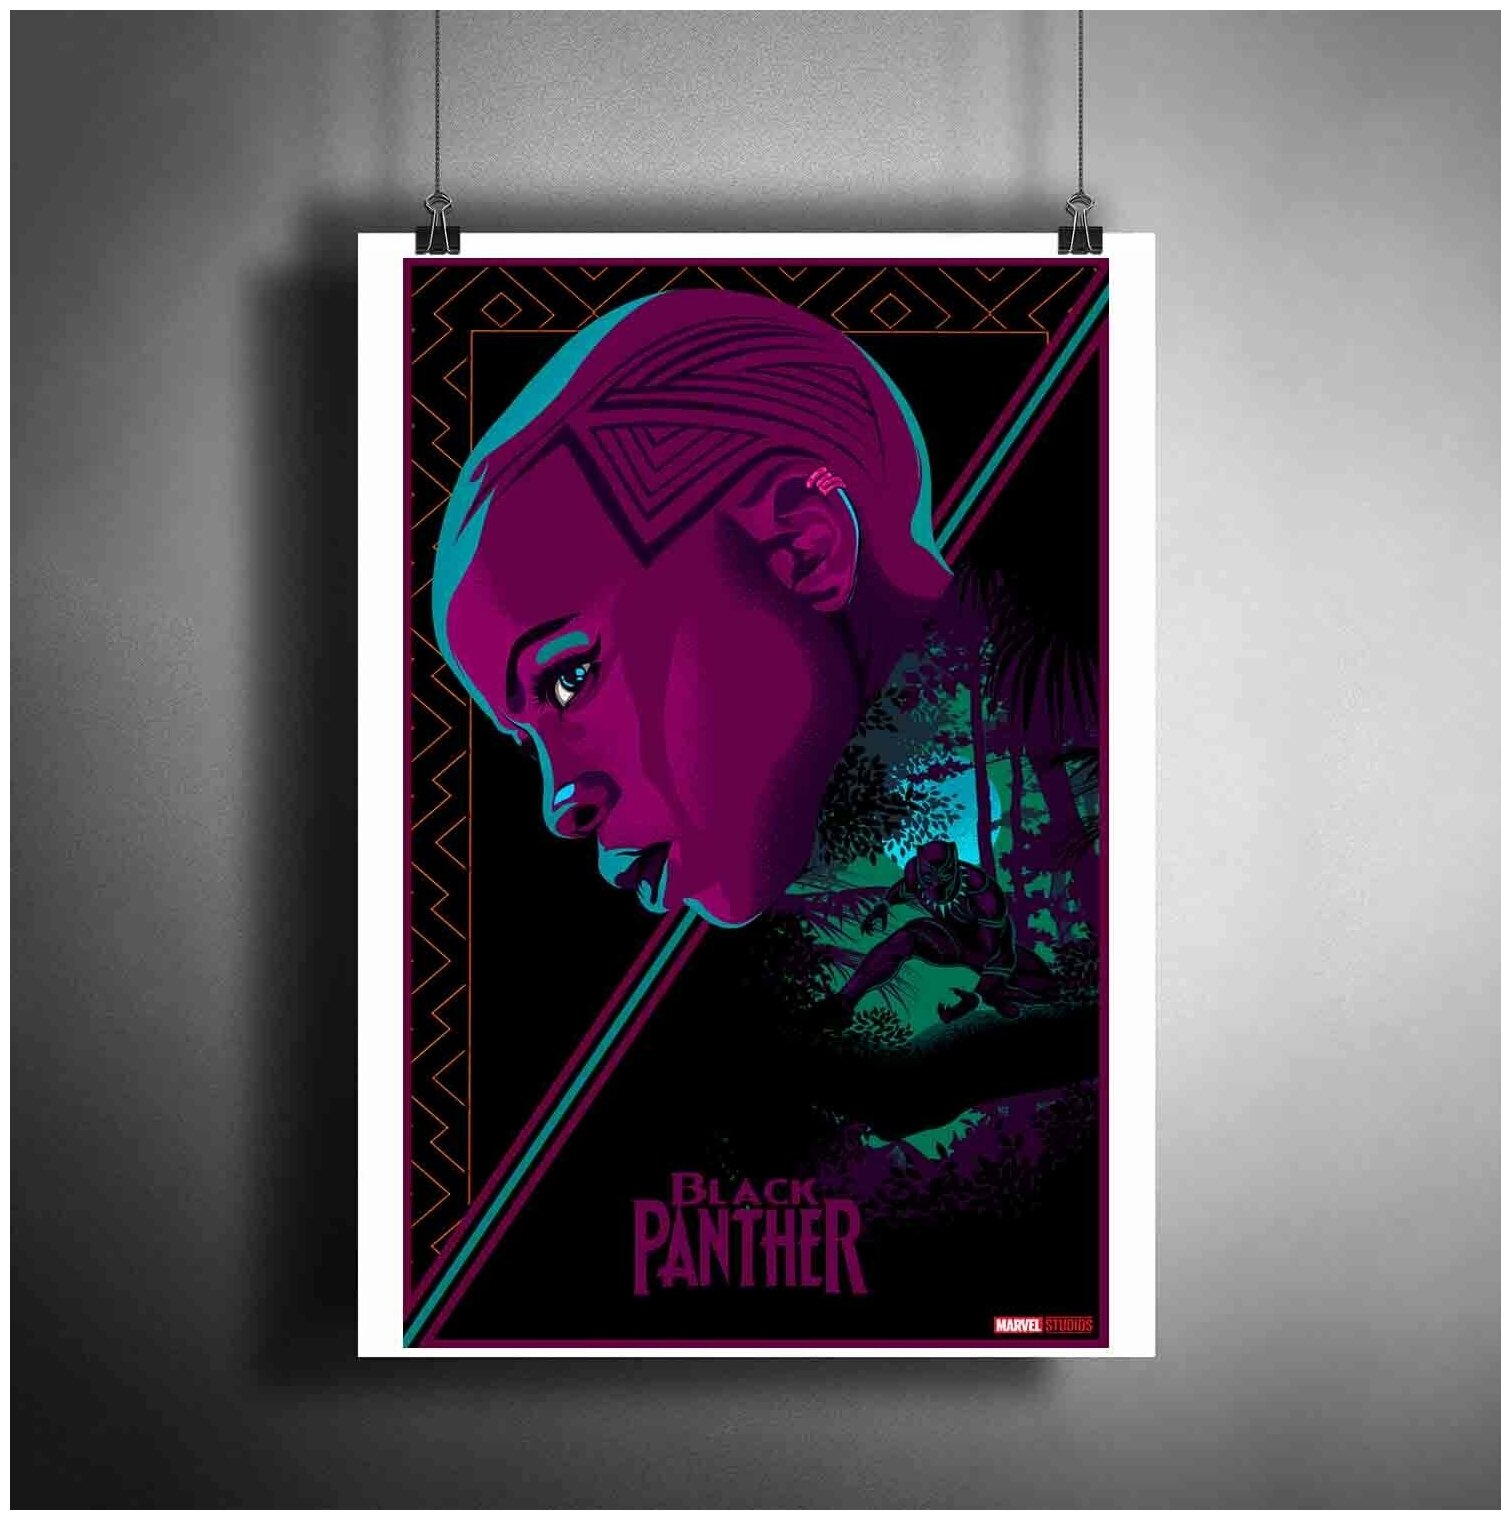 Постер плакат для интерьера "Фильм: Чёрная пантера. Black Panther. Комиксы Марвел"/ Декор дома, офиса. A3 (297 x 420 мм)